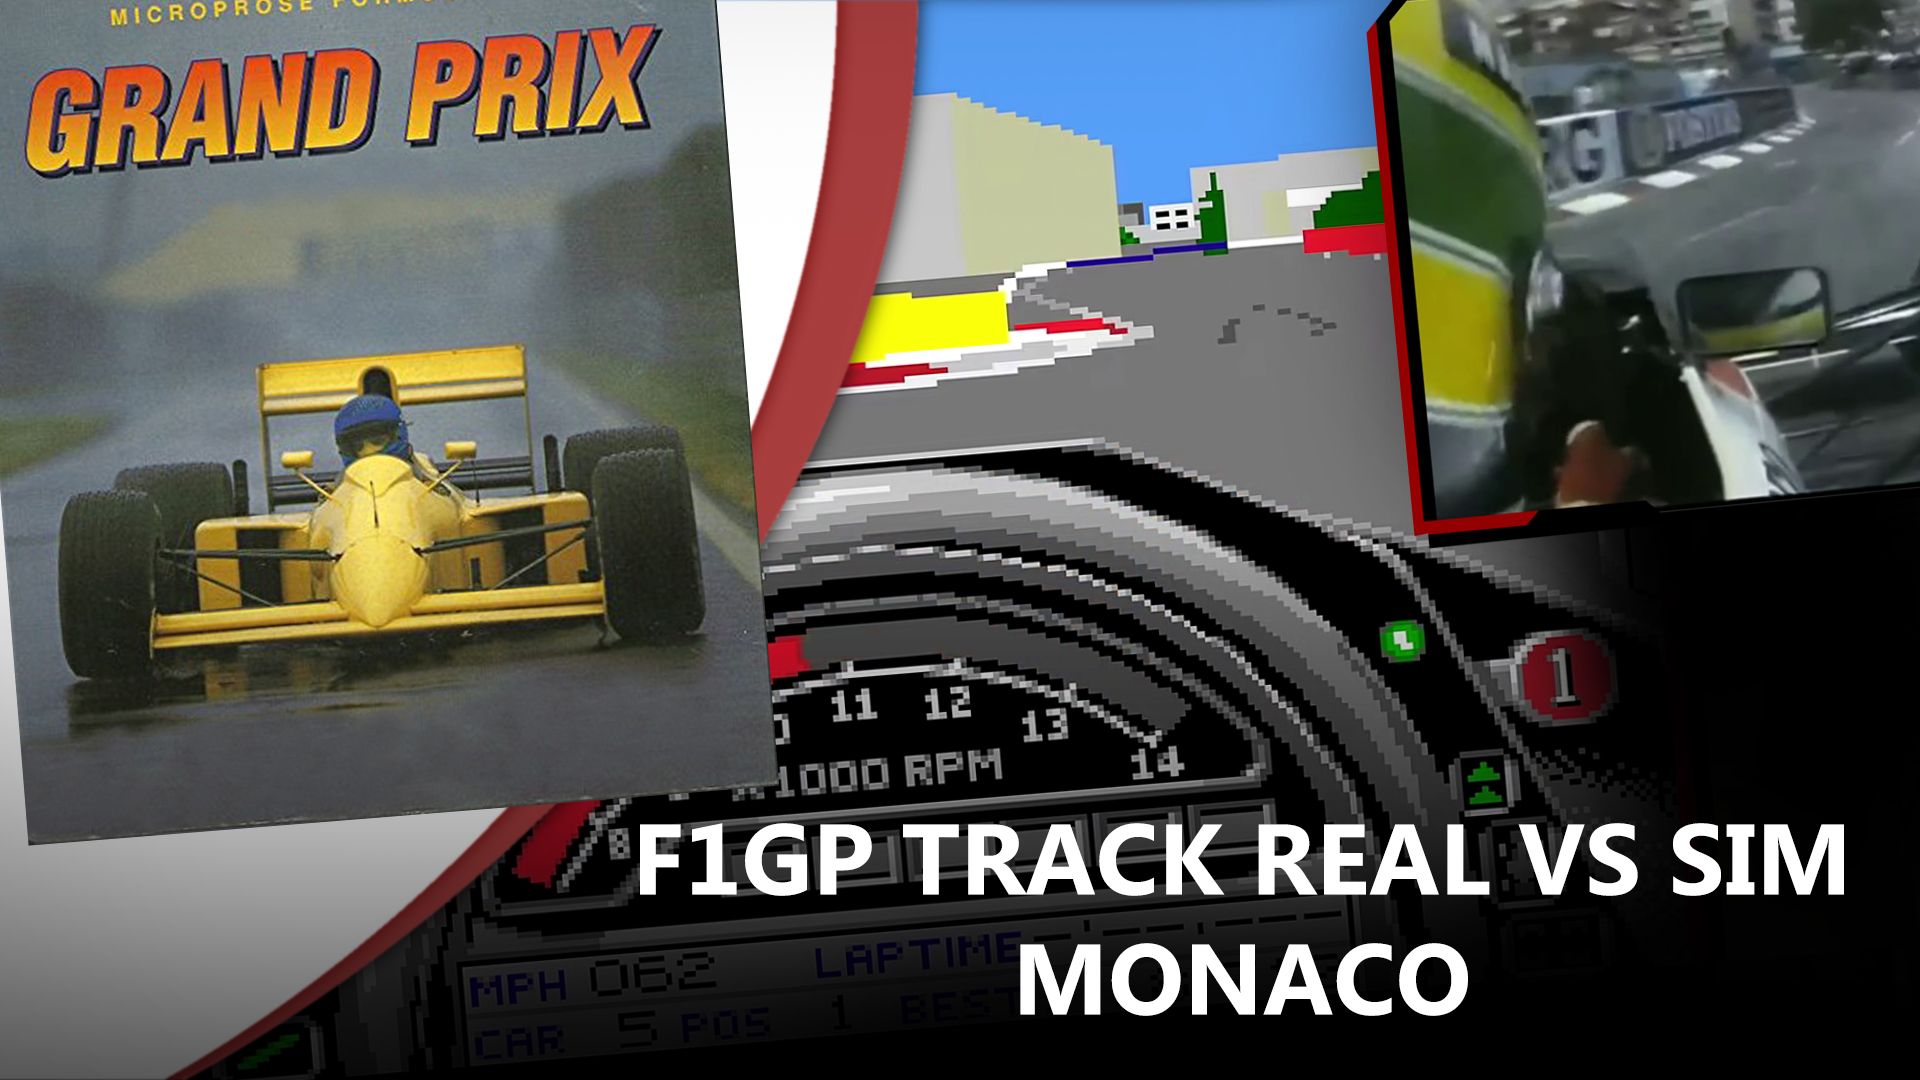 Monaco Track Geometry Comparison in Formula One Grand Prix